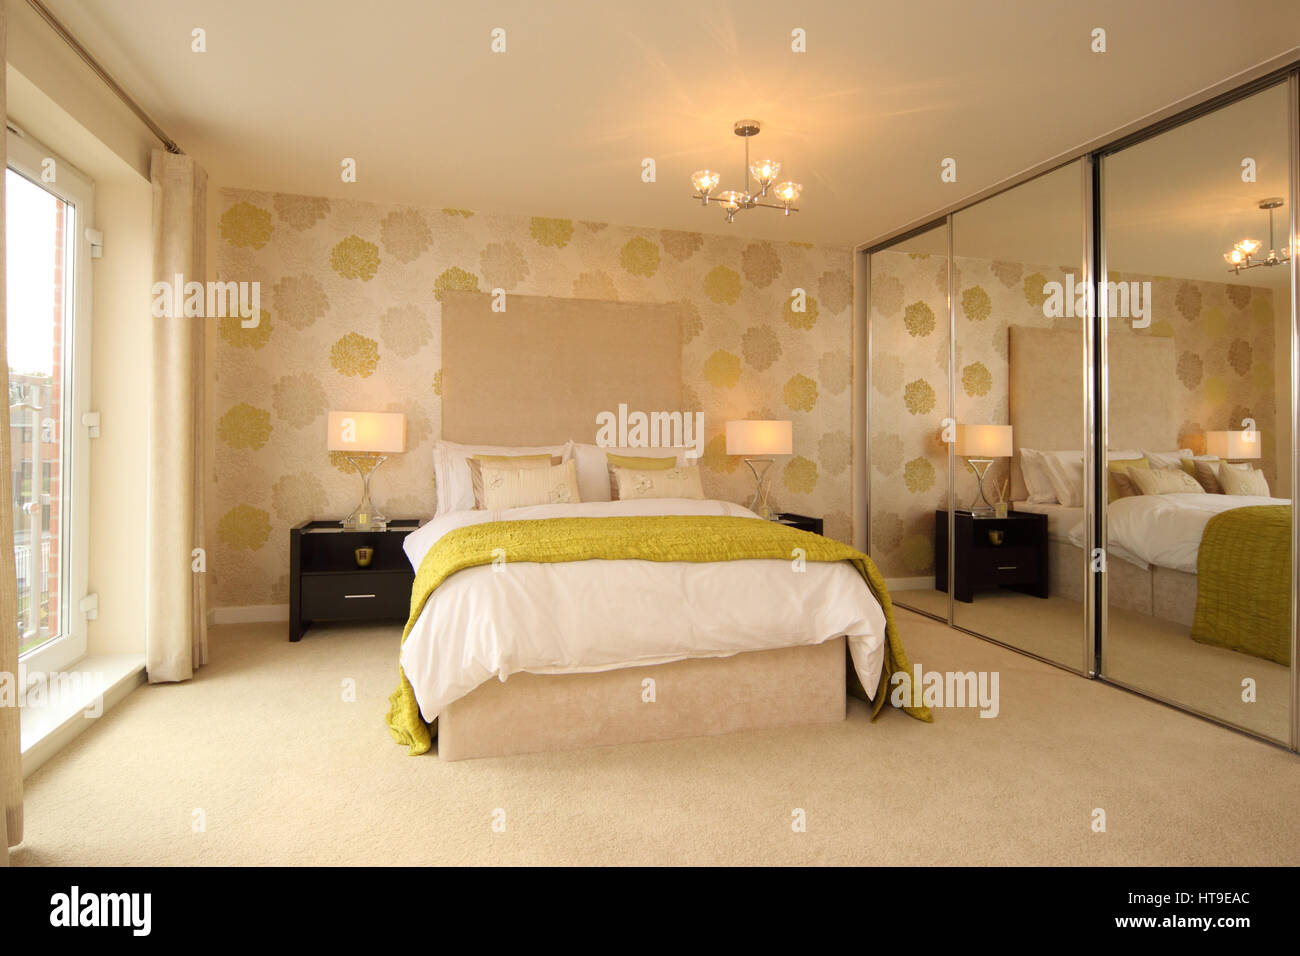 Interior moderno, dormitorio, amplio armario, reflejado, amarillo crema decoración, lámparas, cubrecama, lanzar, cojines, Foto de stock